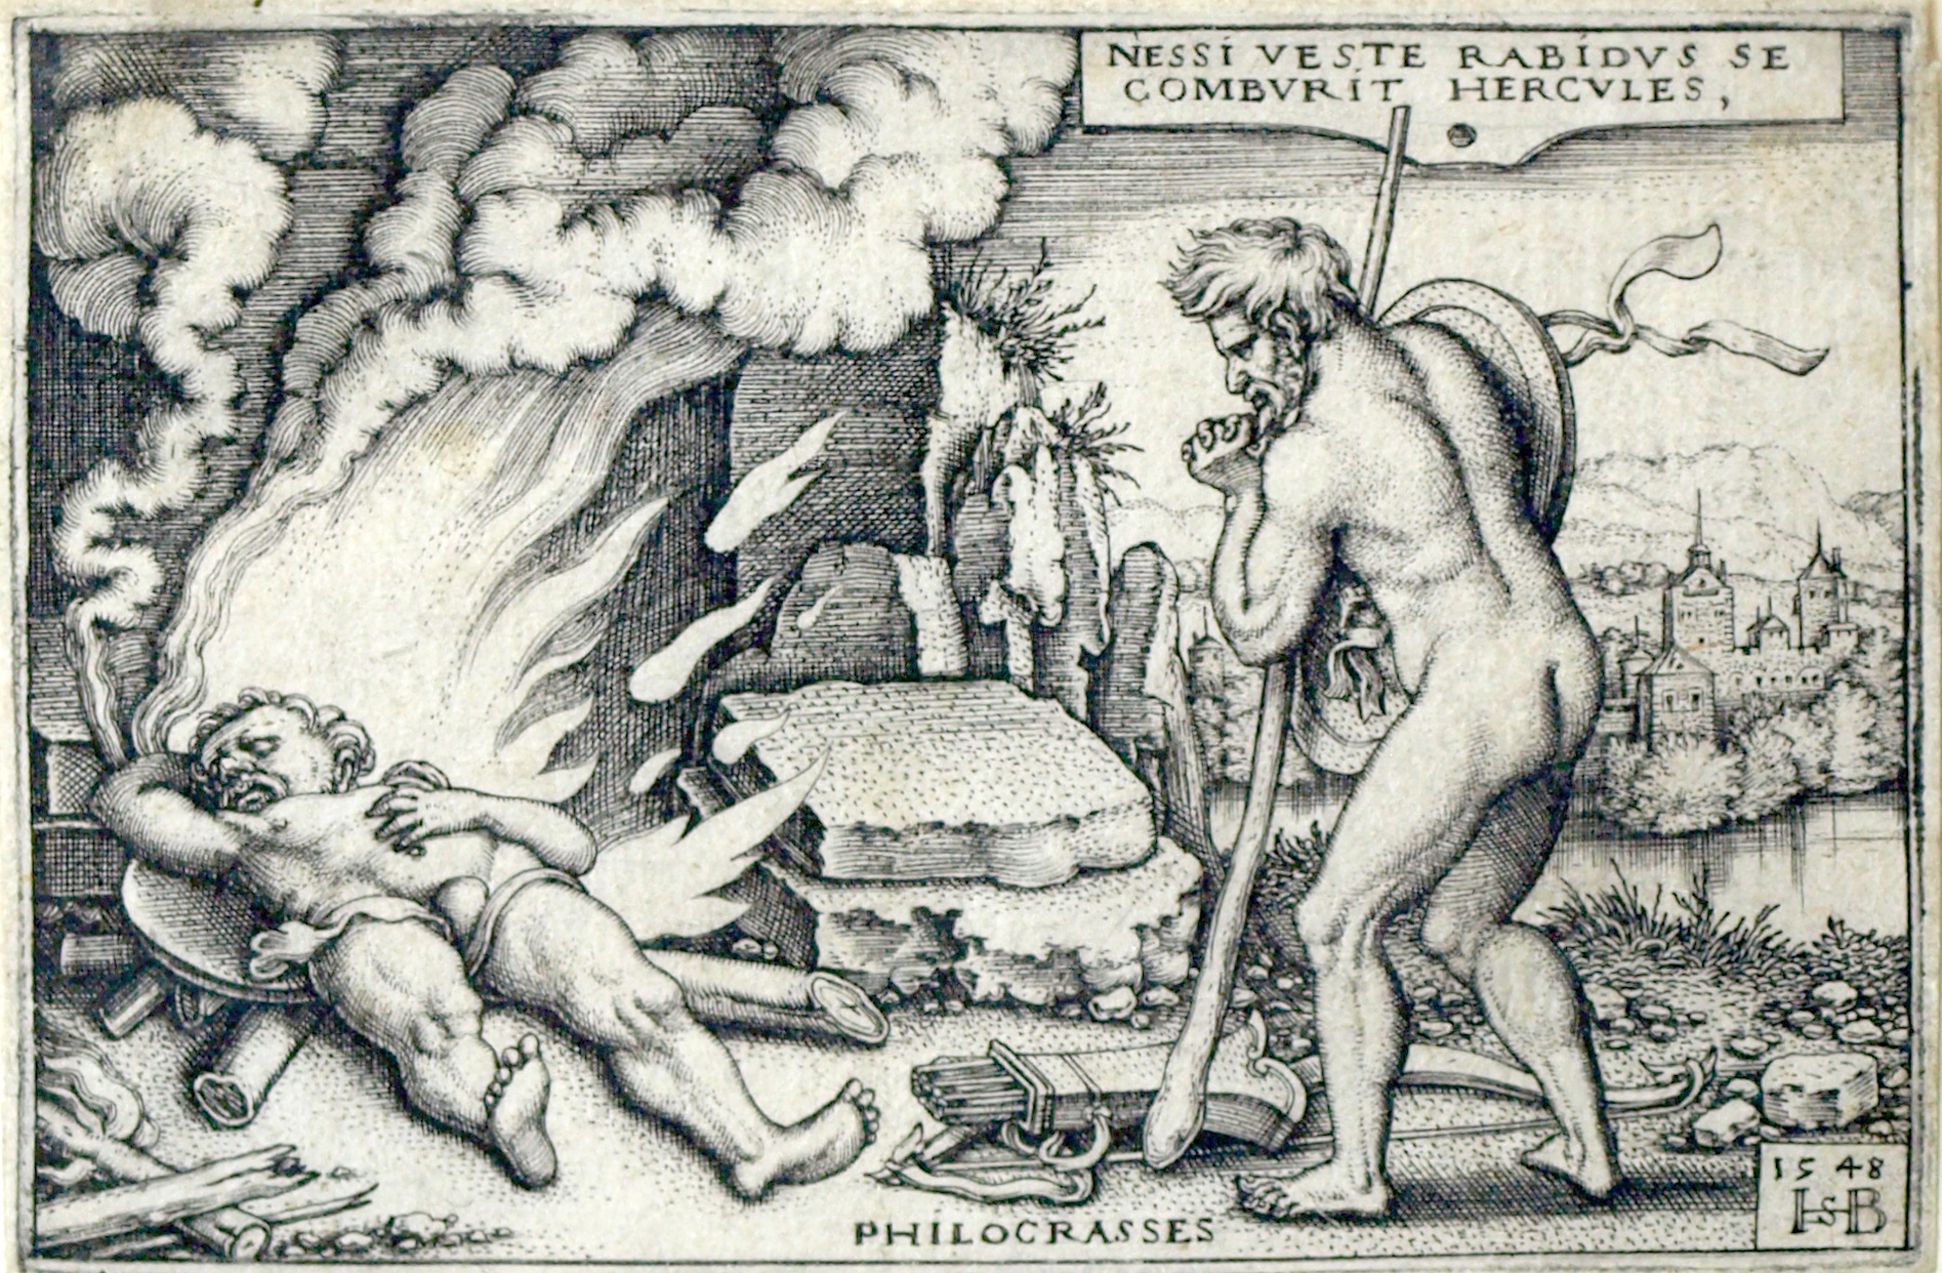 Die Taten des Hercules rasend (gemacht) durch das Gewand des Nessus verbrennt sich Hercules, 1548, 52 x 77 mm